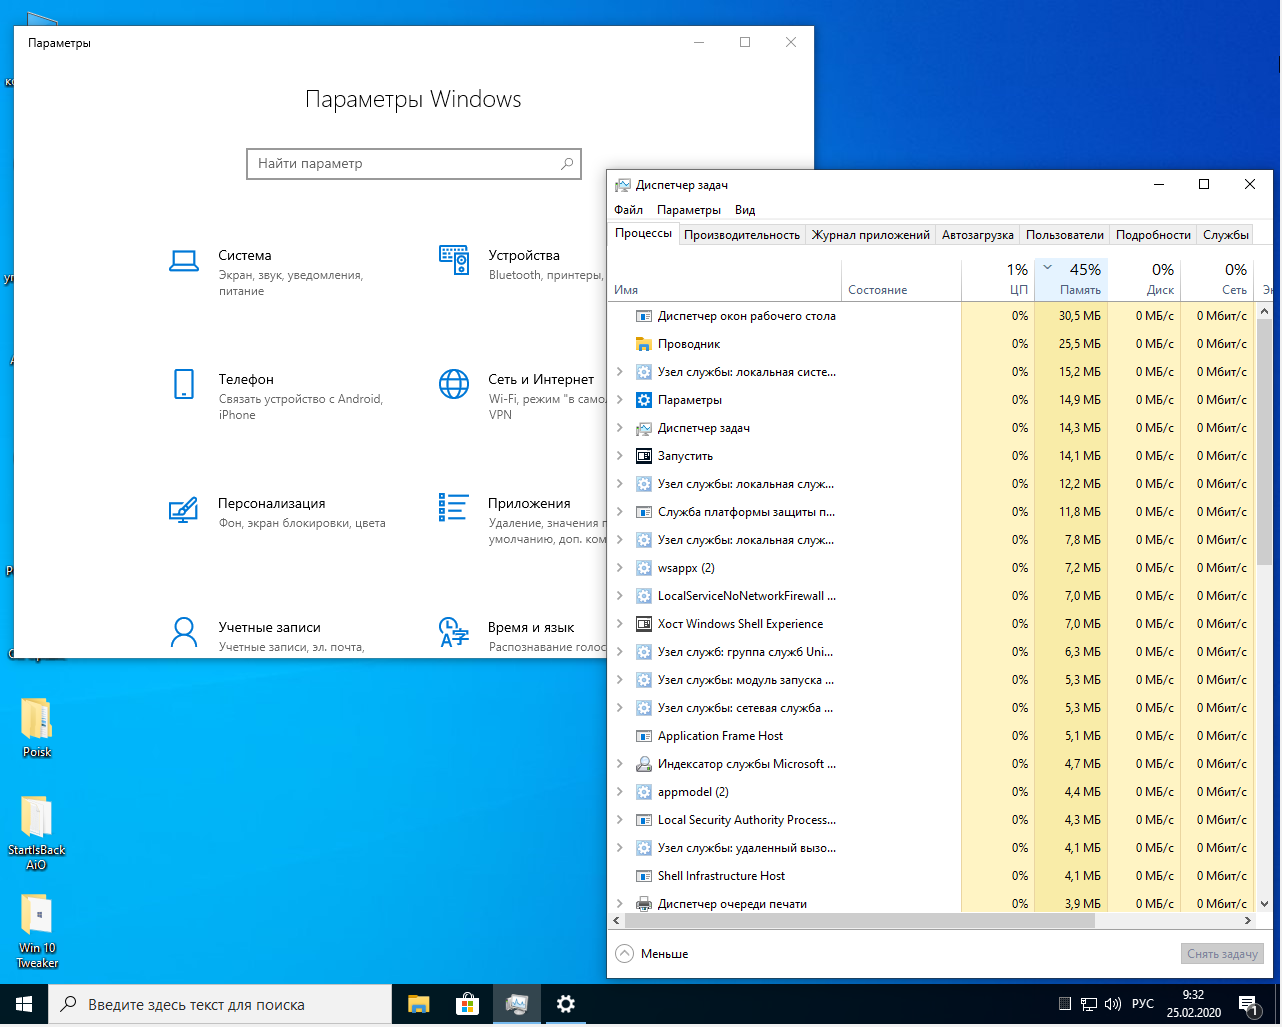 Самые легкие сборки windows. Сборки виндовс для слабых ноутбуков. Самая легкая Windows. Windows 10 сборка для слабых ПК. Лёгкая версия Windows 10 для слабых ноутбуков.